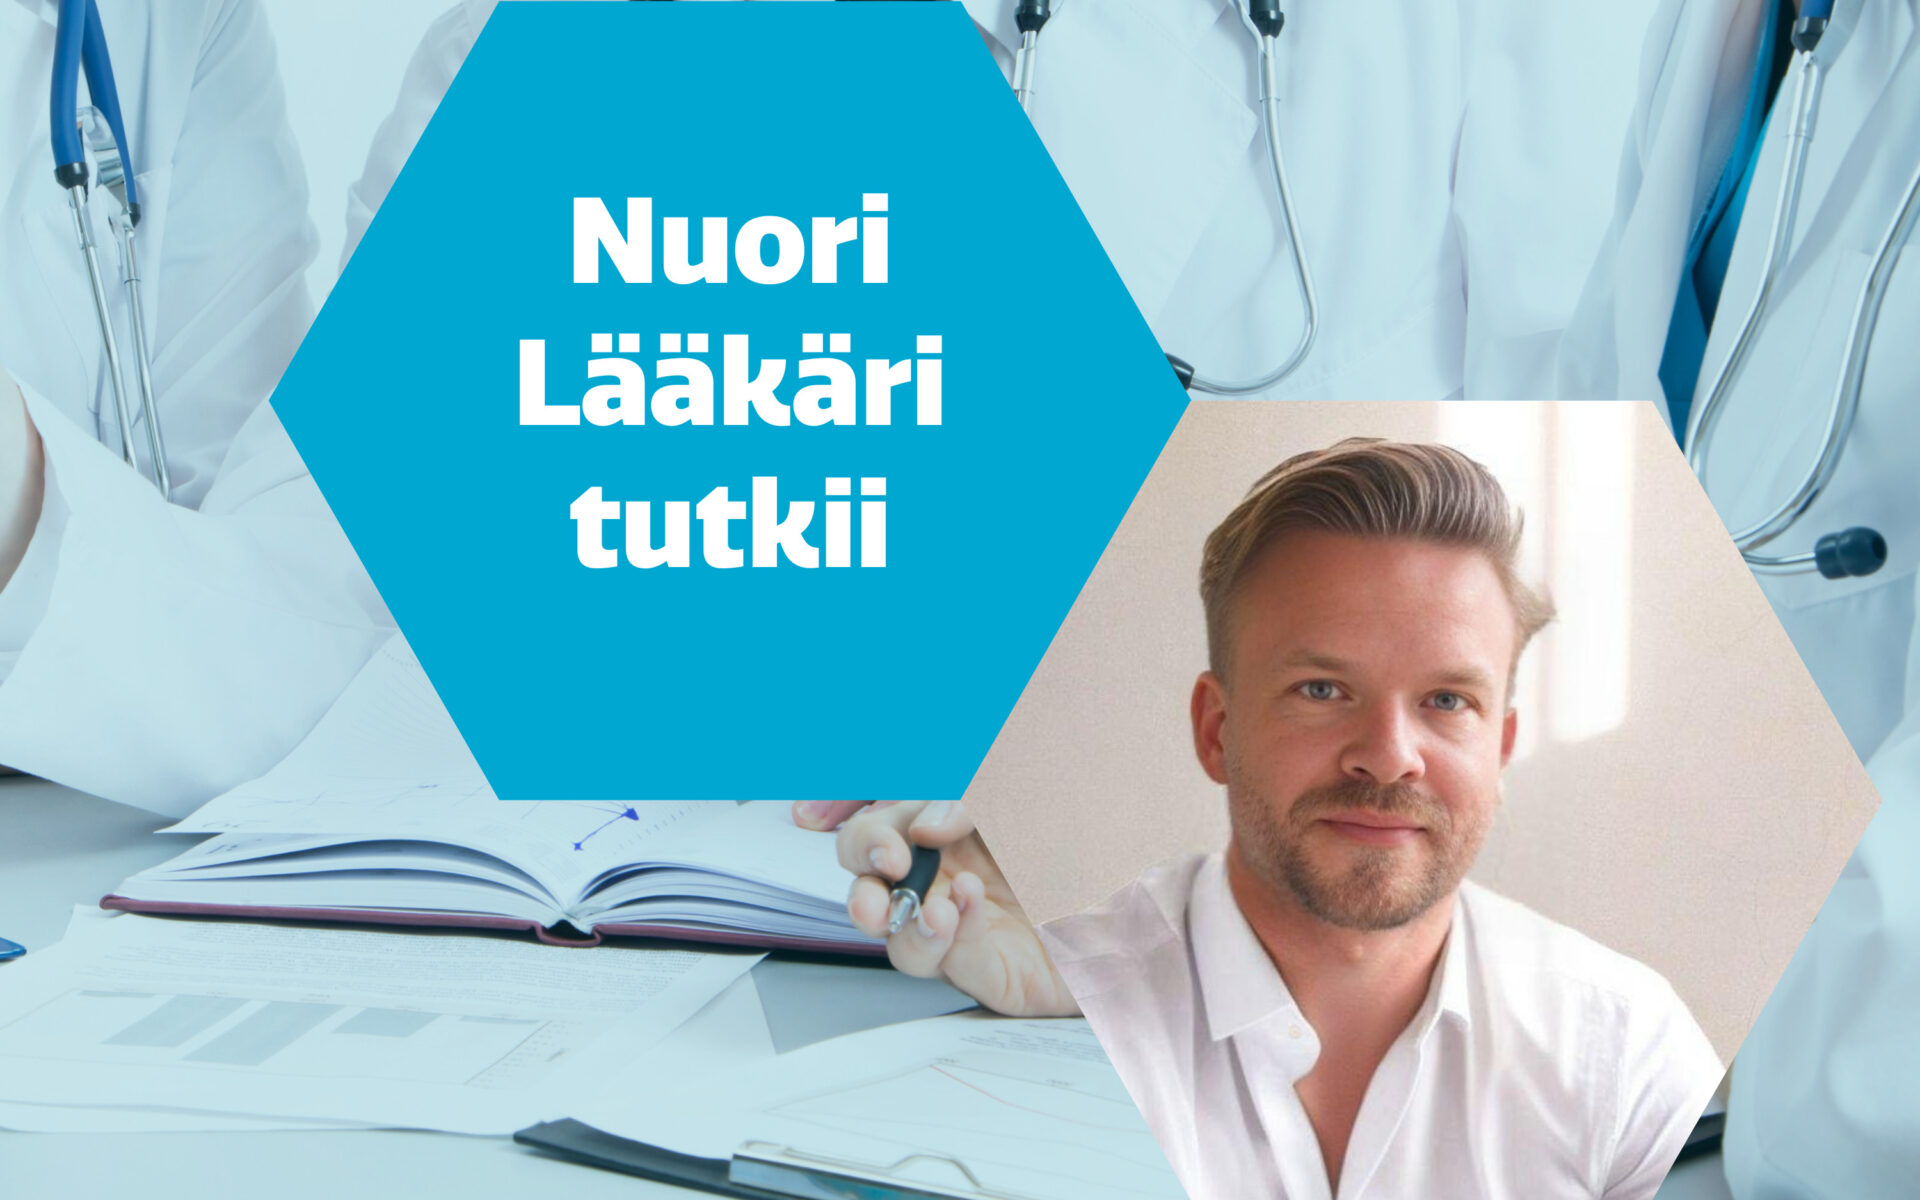 Nuori Lääkäri tutkii – Tuomo Kiiskinen: Linking genetic risk factors of complex disorders and health burden in population